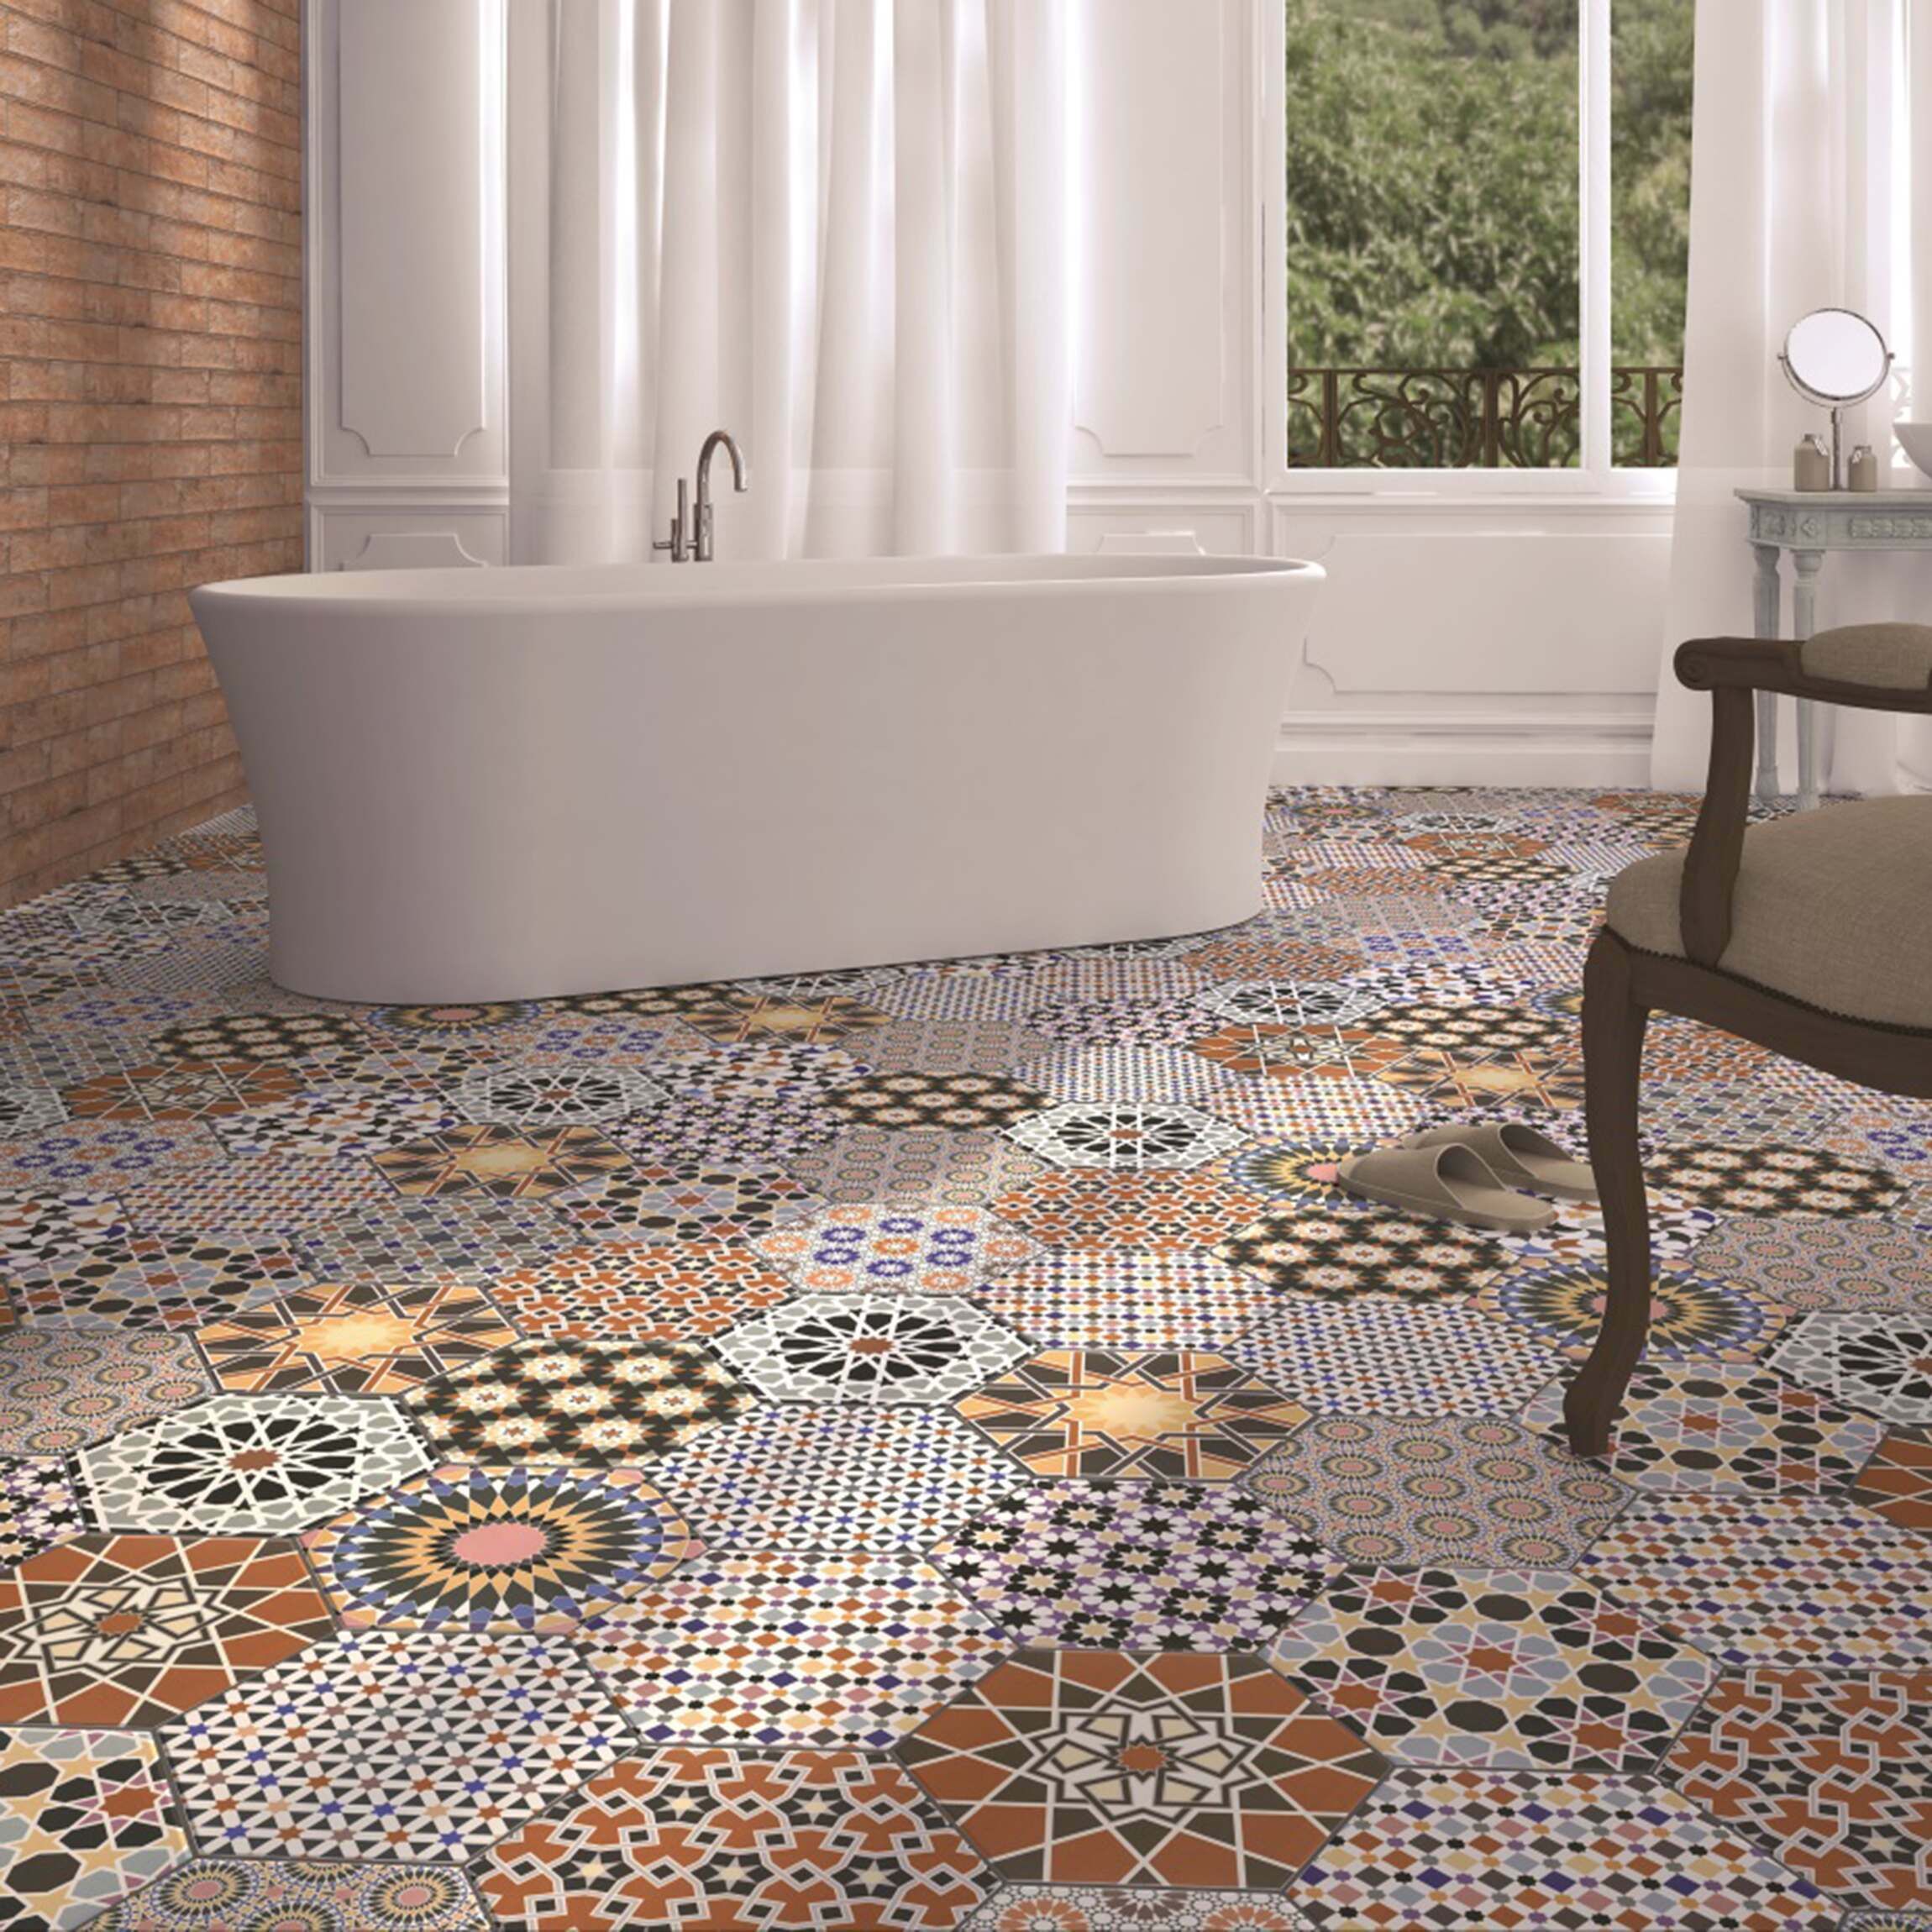 Andalucia Hexagon Patterned Porcelain, Spanish Tile Design Vinyl Flooring